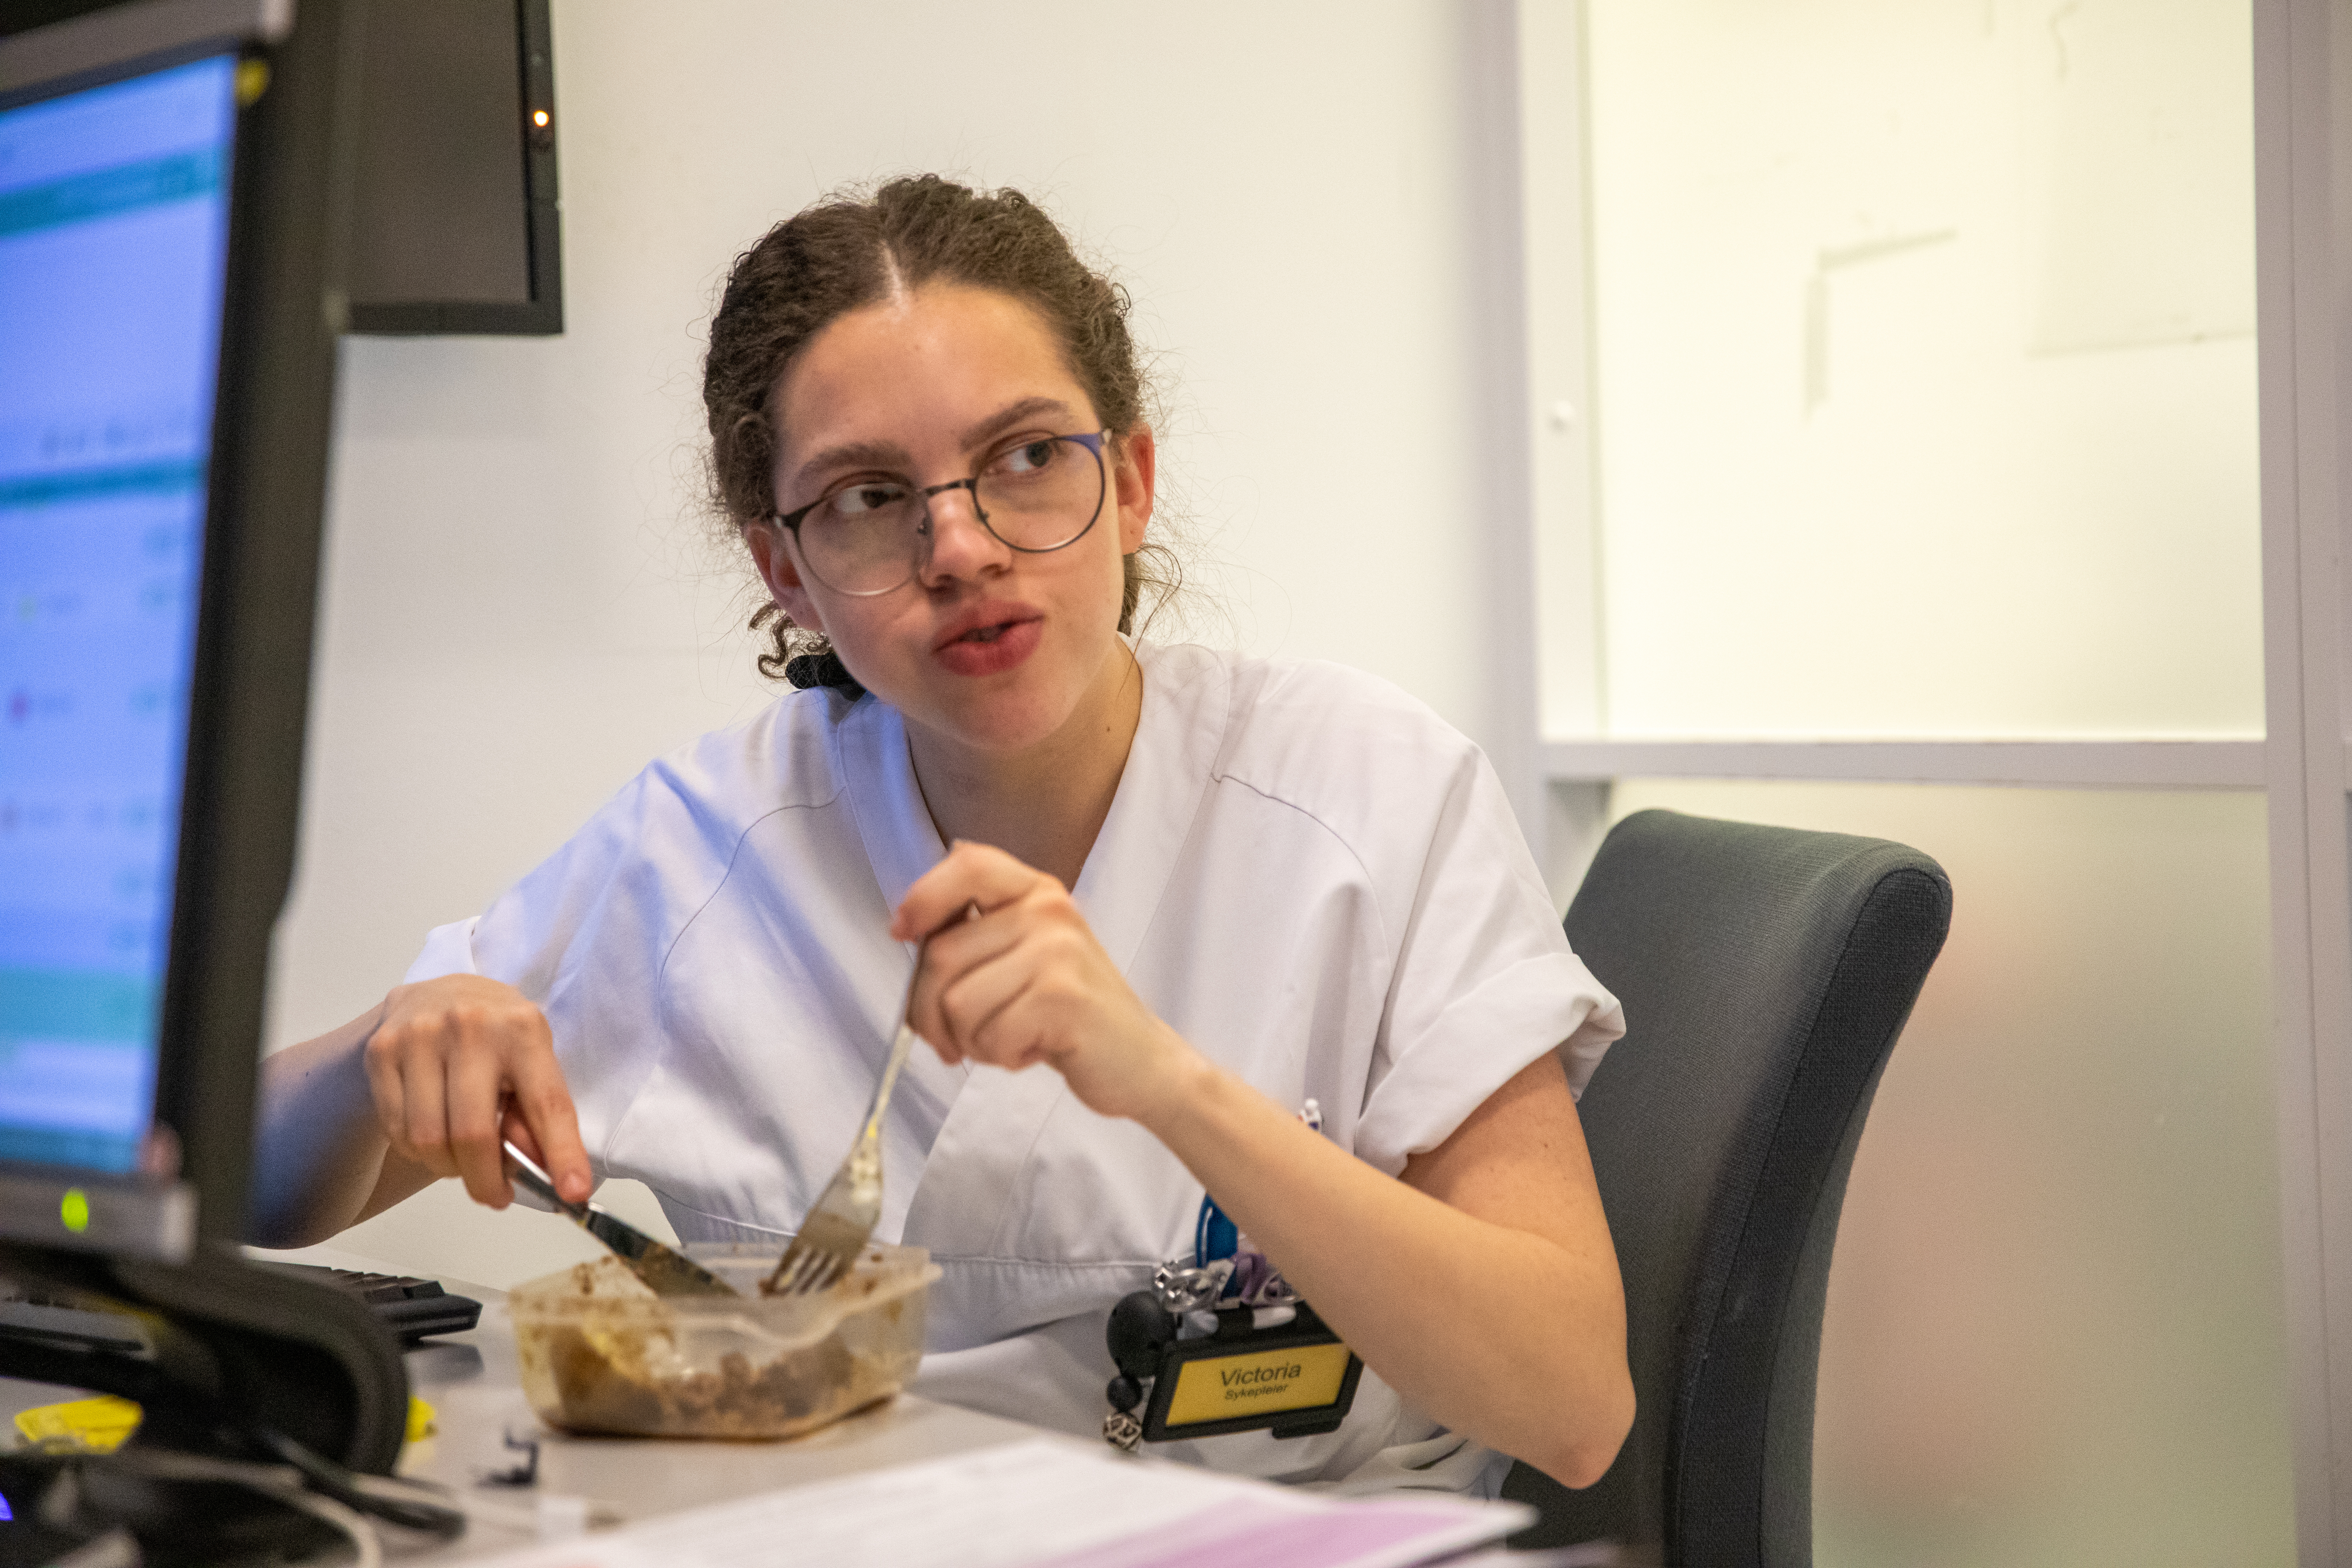 Over åtte timer etter at hun forlot hjemmet sitt, tar Victoria Catanho sin første matbit. Noen kollegaer forteller at de noen ganger ikke får tid til å spise en eneste gang under vakta.